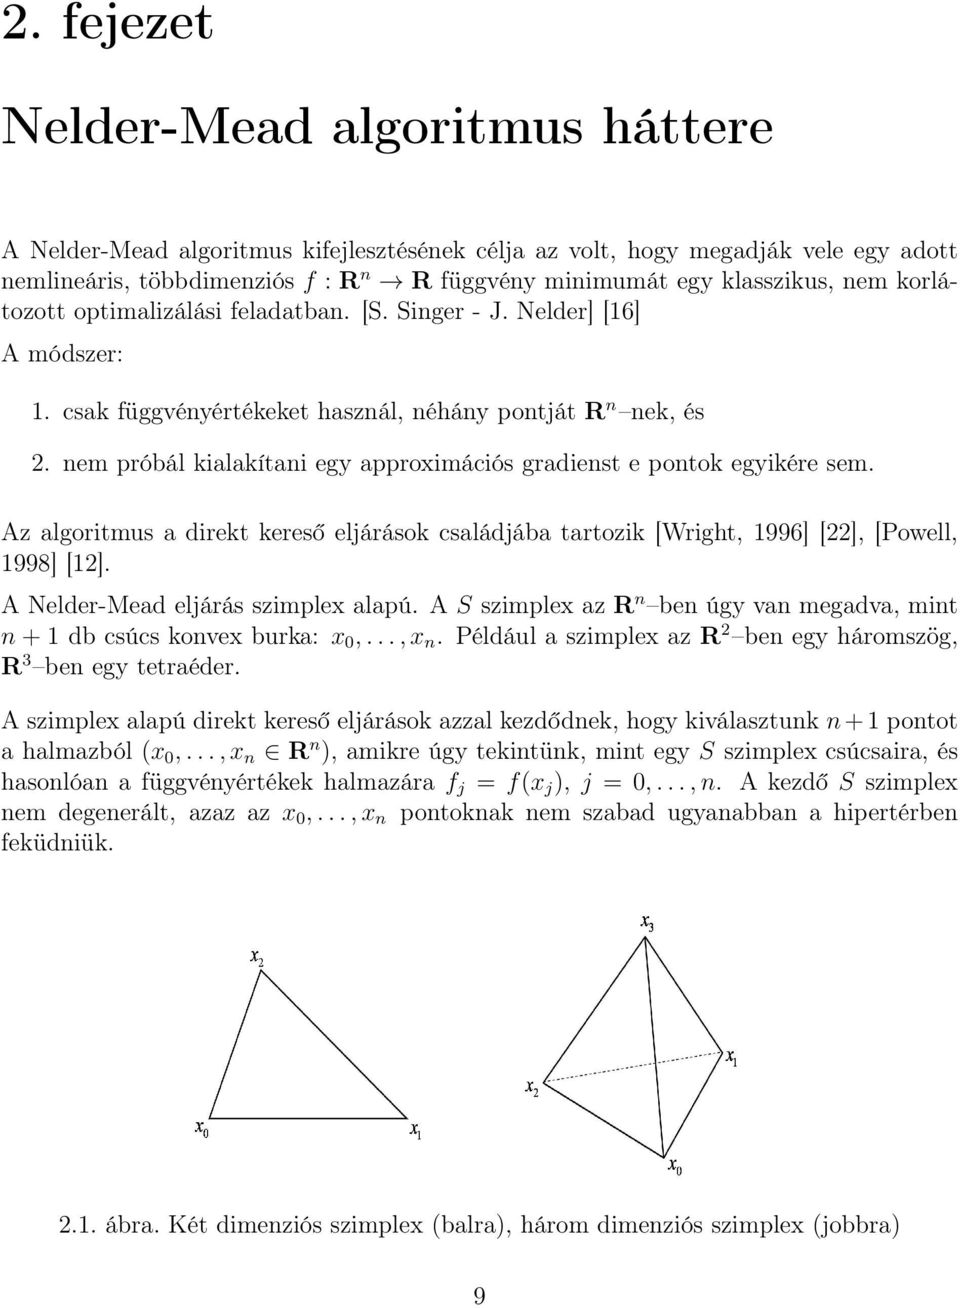 nem próbál kialakítani egy approximációs gradienst e pontok egyikére sem. Az algoritmus a direkt kereső eljárások családjába tartozik [Wright, 1996] [22], [Powell, 1998] [12].